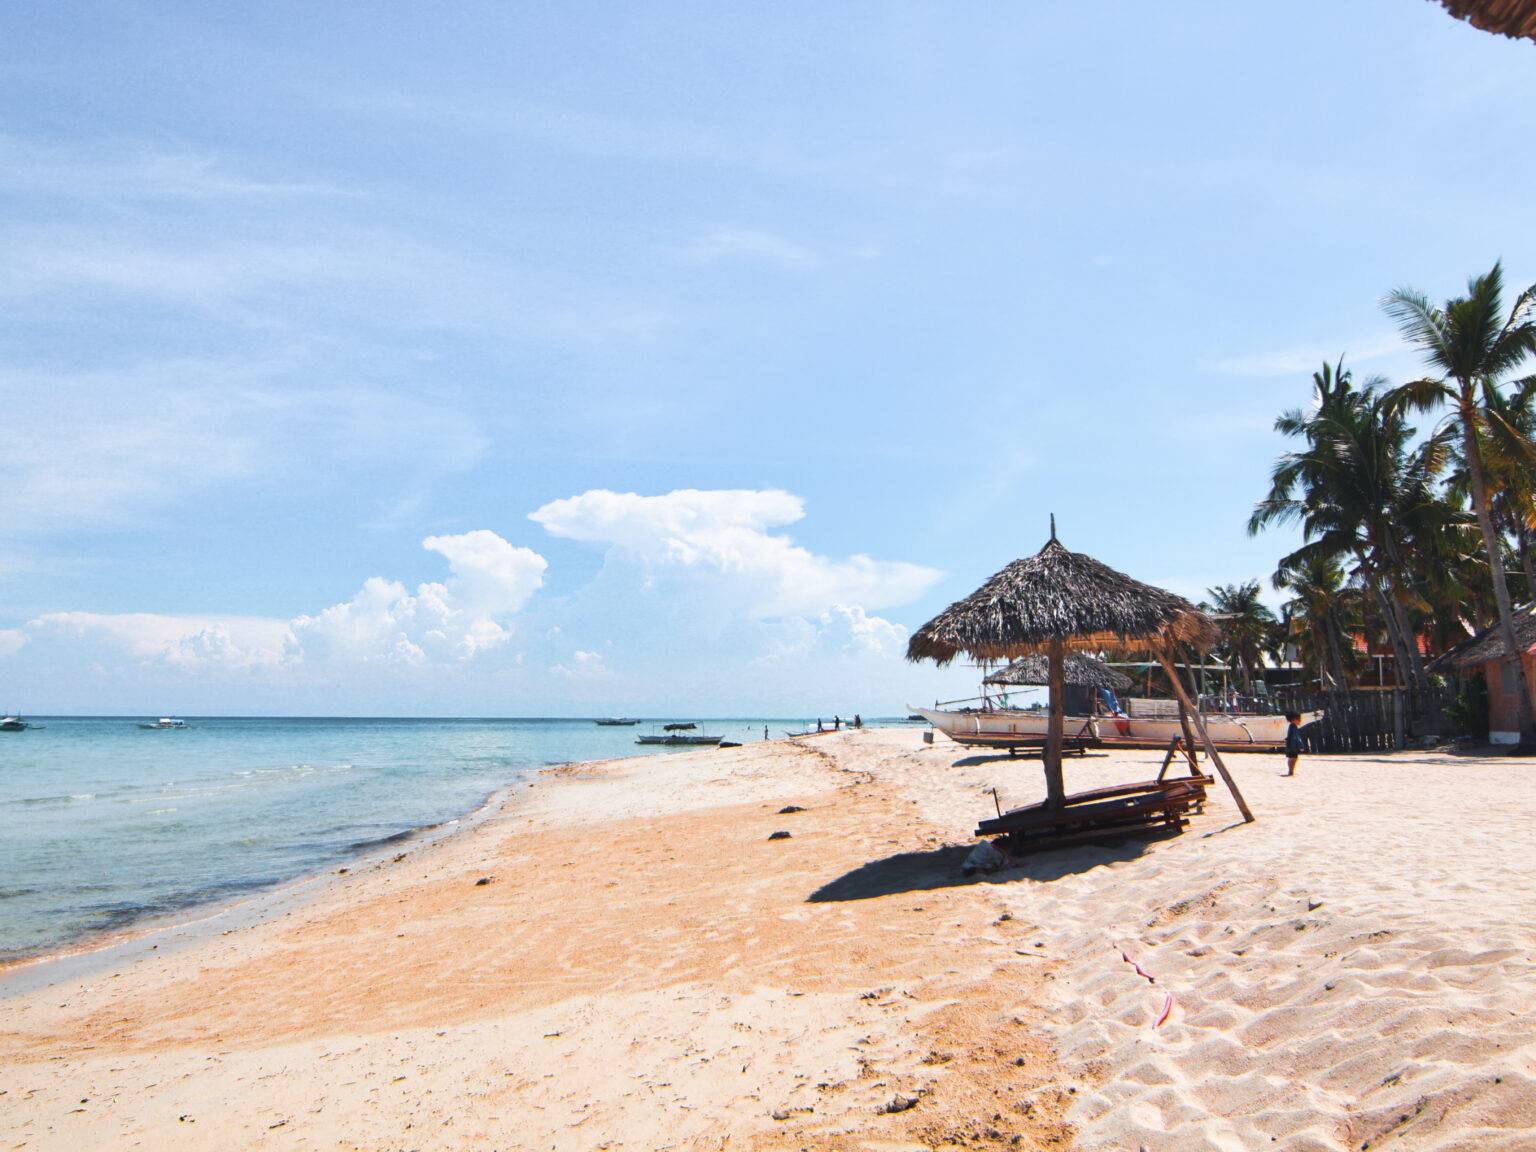 Ein Schirm aus Palmenblättern spendet Schatten am dem schönen Strand mit feinem Sand und kleinen Fischerbooten im Hintergrund.